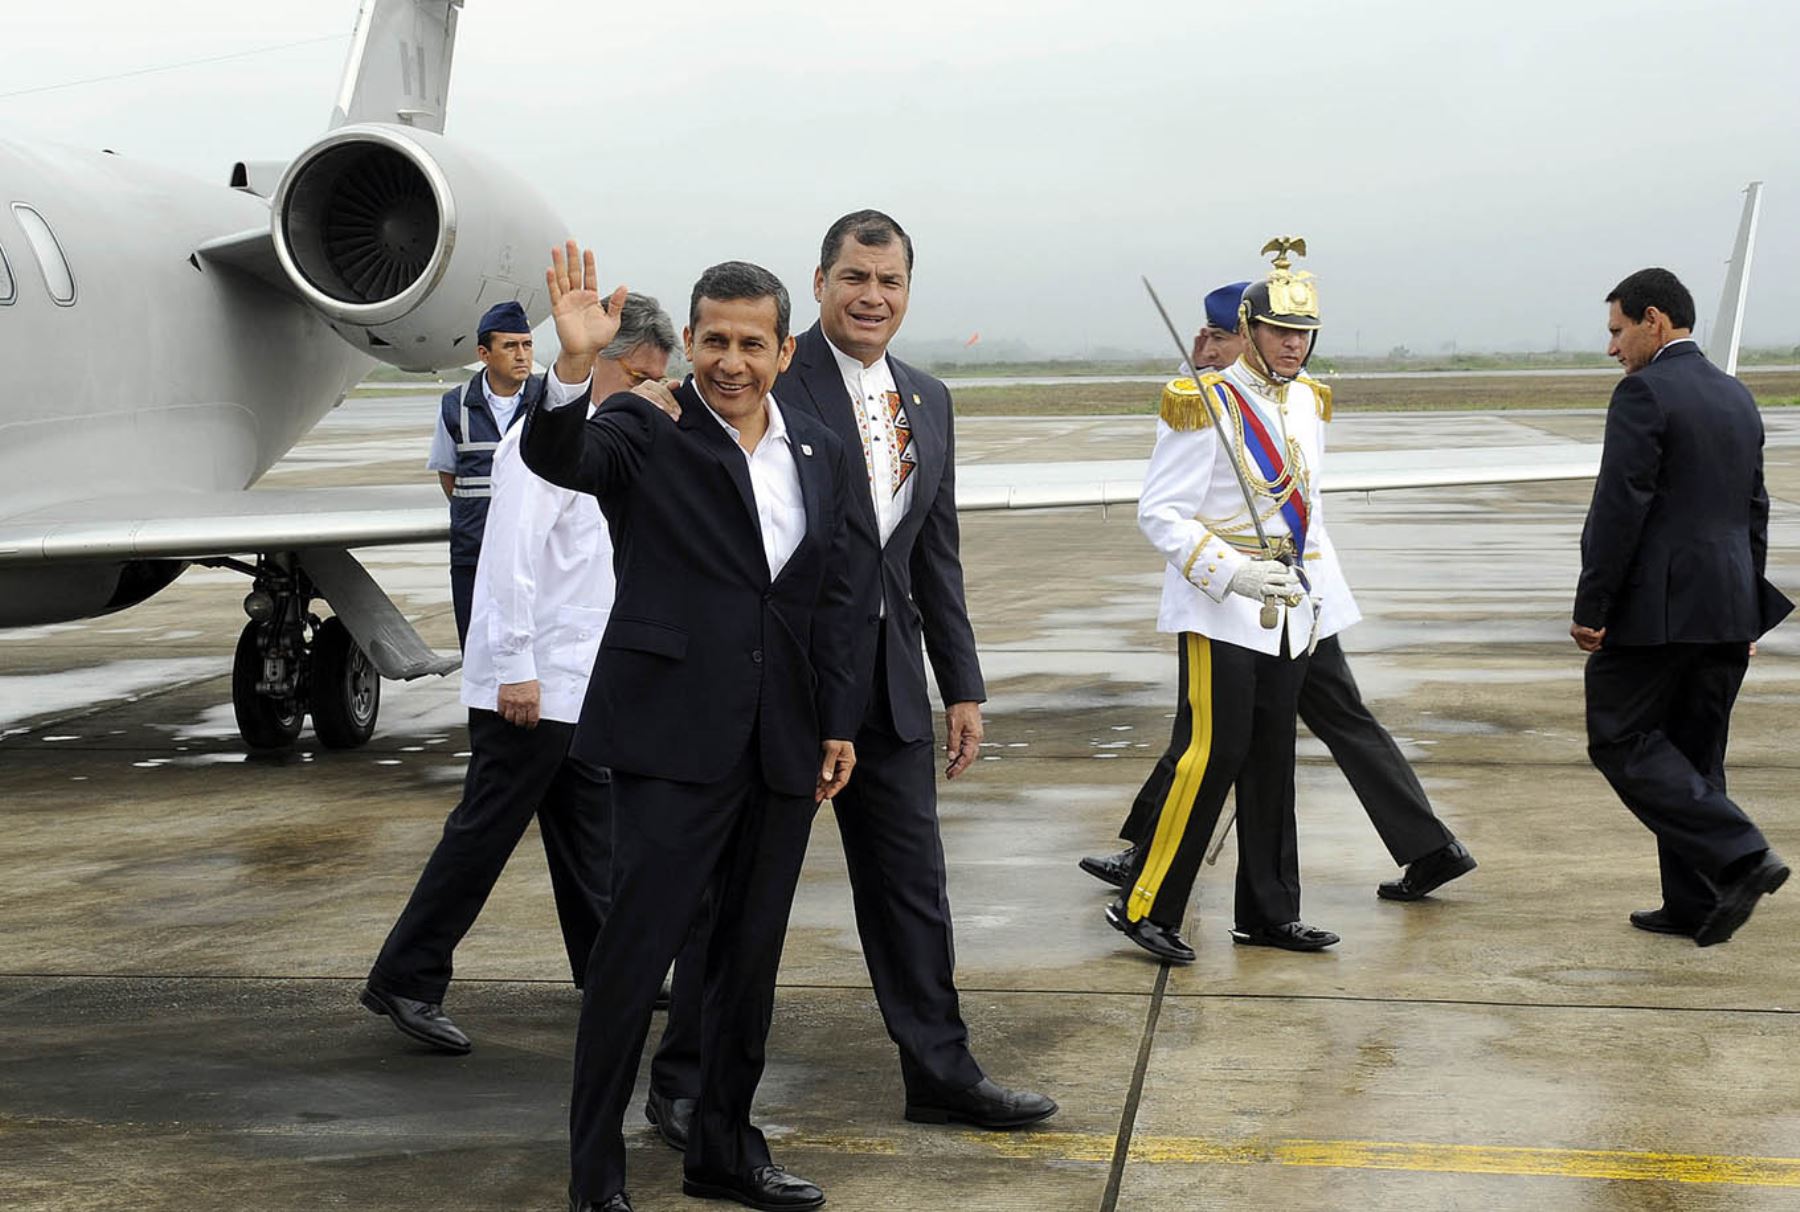 Presidente Humala: "Perú y Ecuador seguiremos trabajando por la paz".